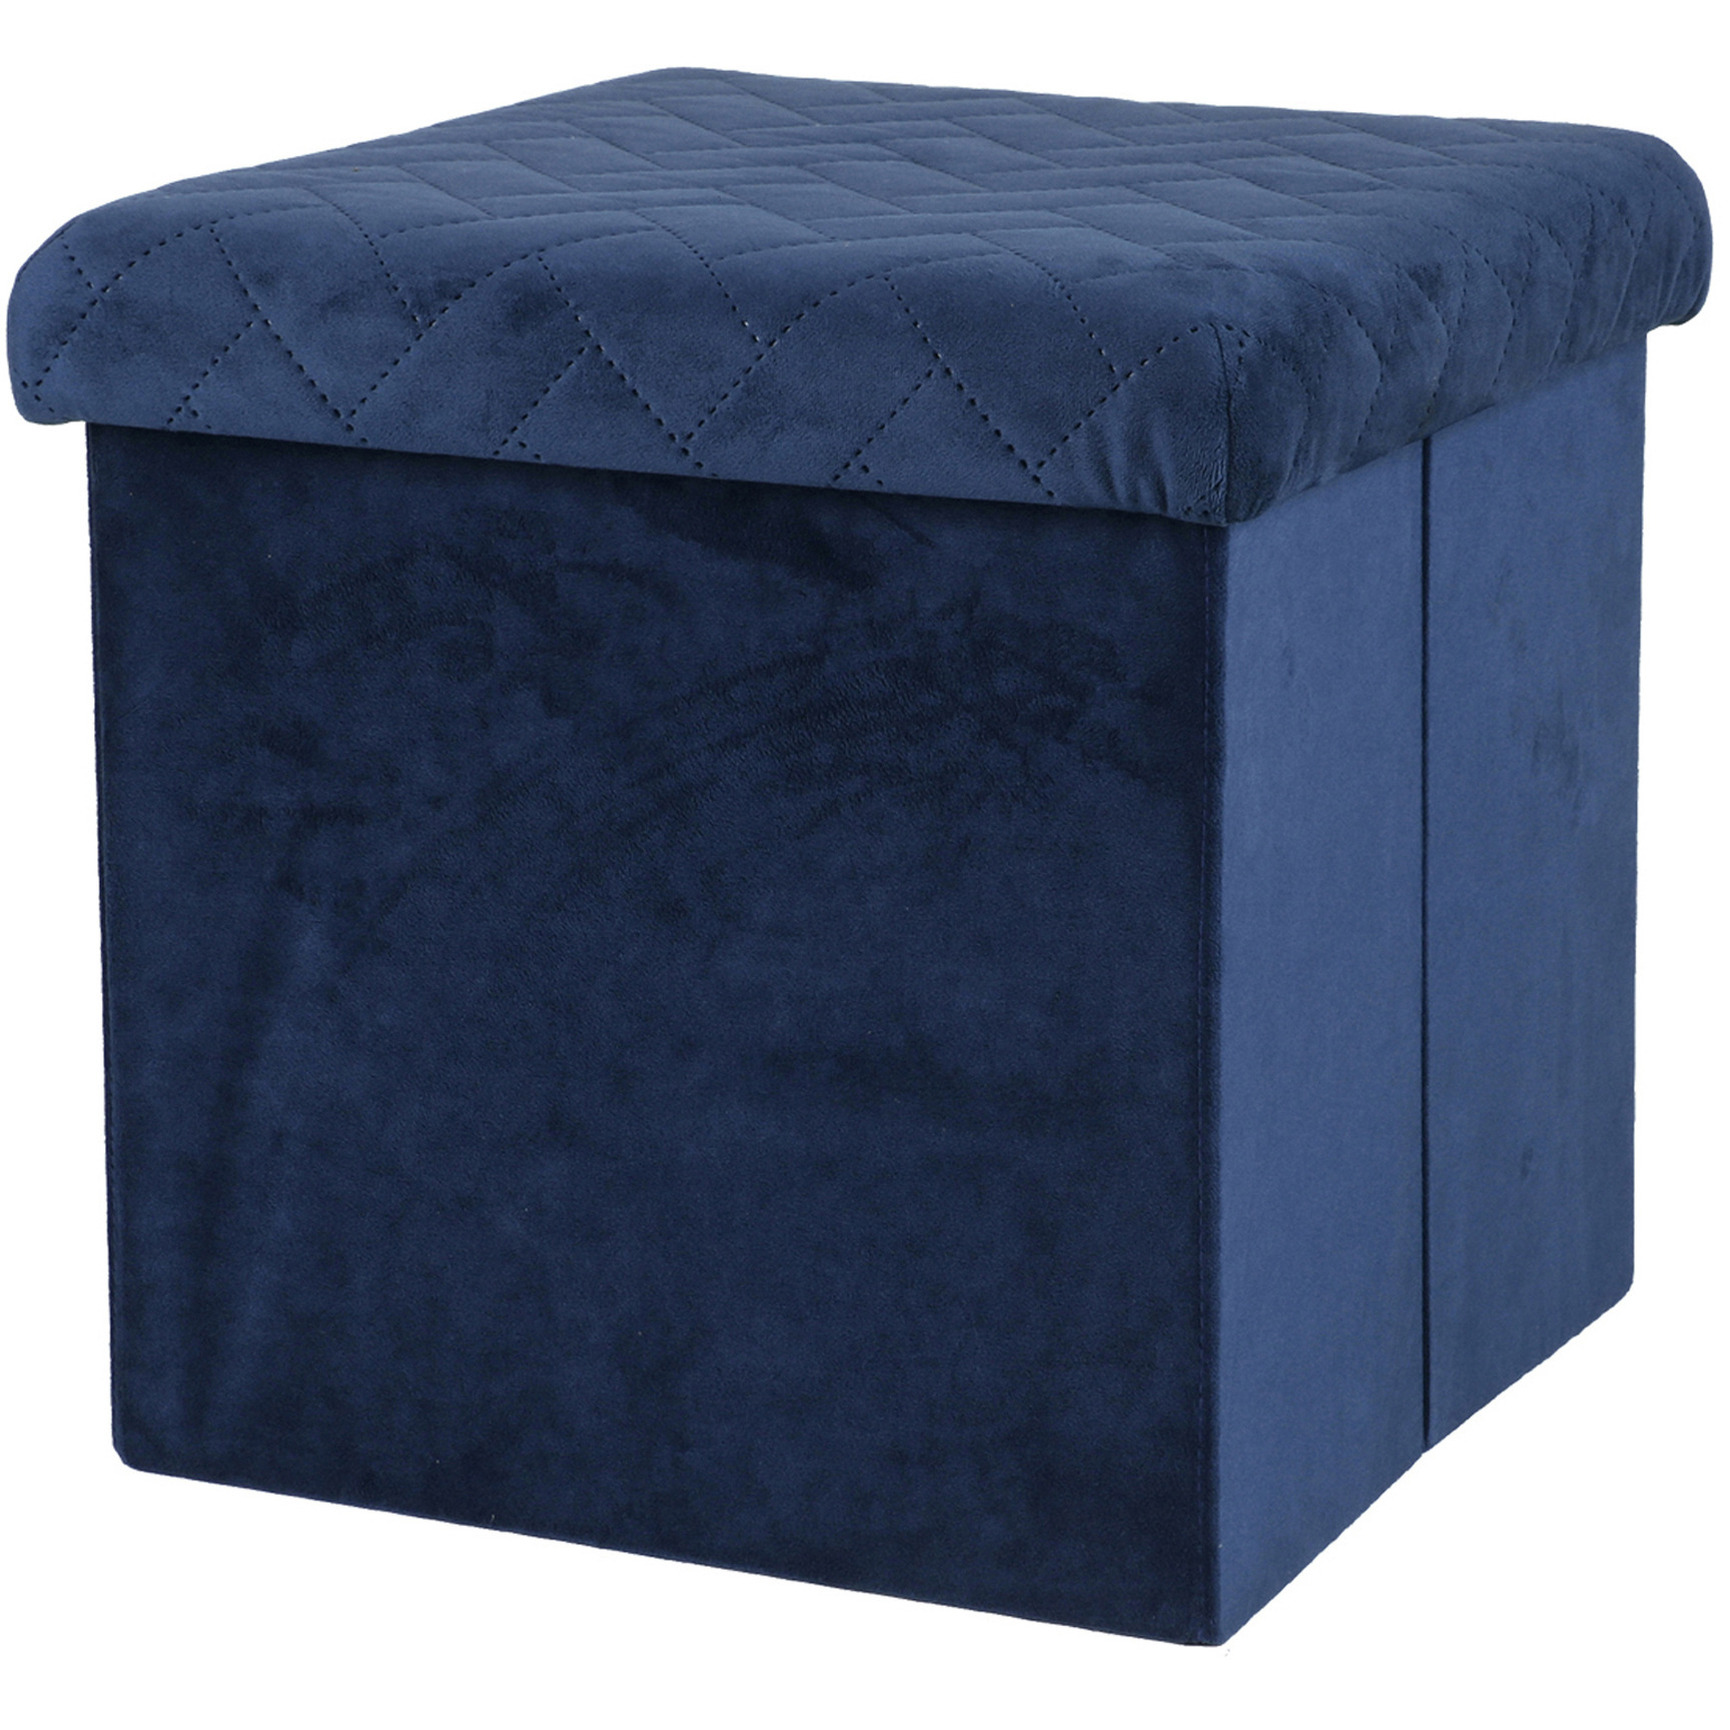 Poef-hocker opbergbox zit krukje velvet donkerblauw polyester-mdf 38 x 38 cm opvouwbaar